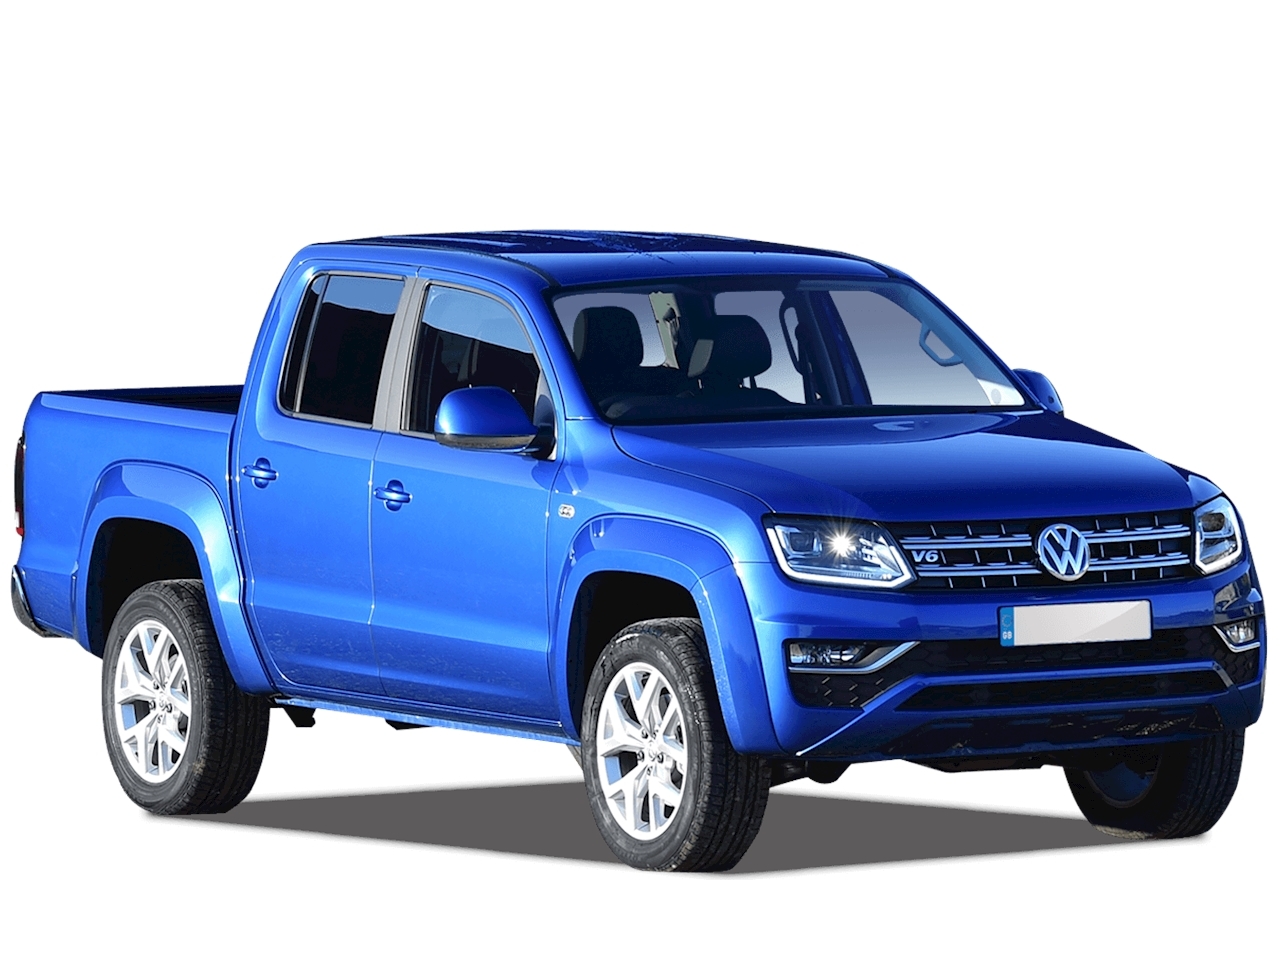 Volkswagen Amarok Pickup Truck Leasing & Contract Hire